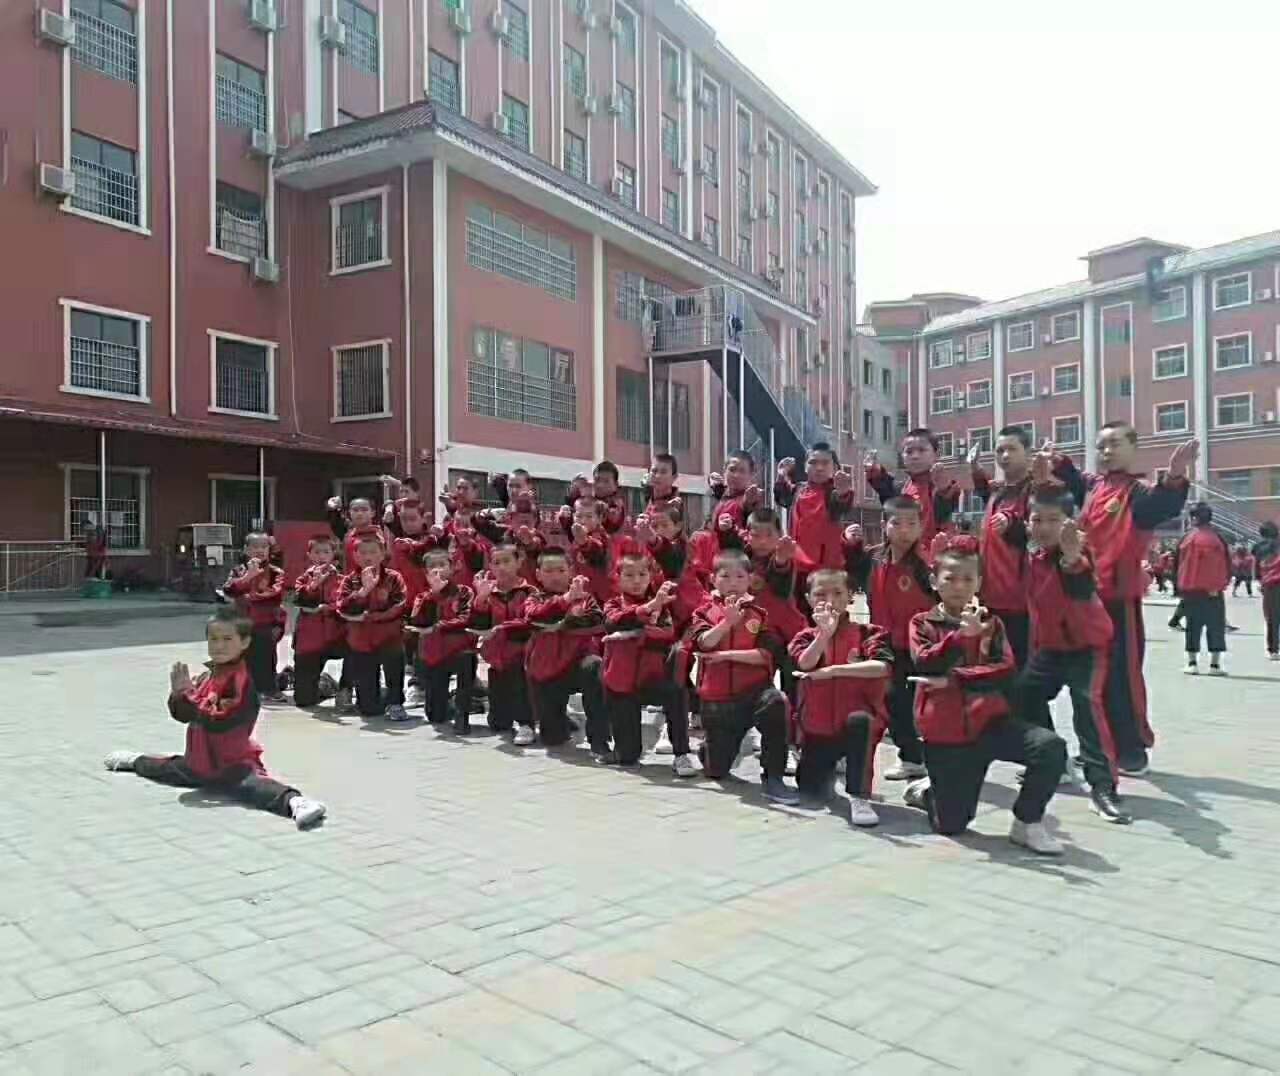 少林寺武术学校